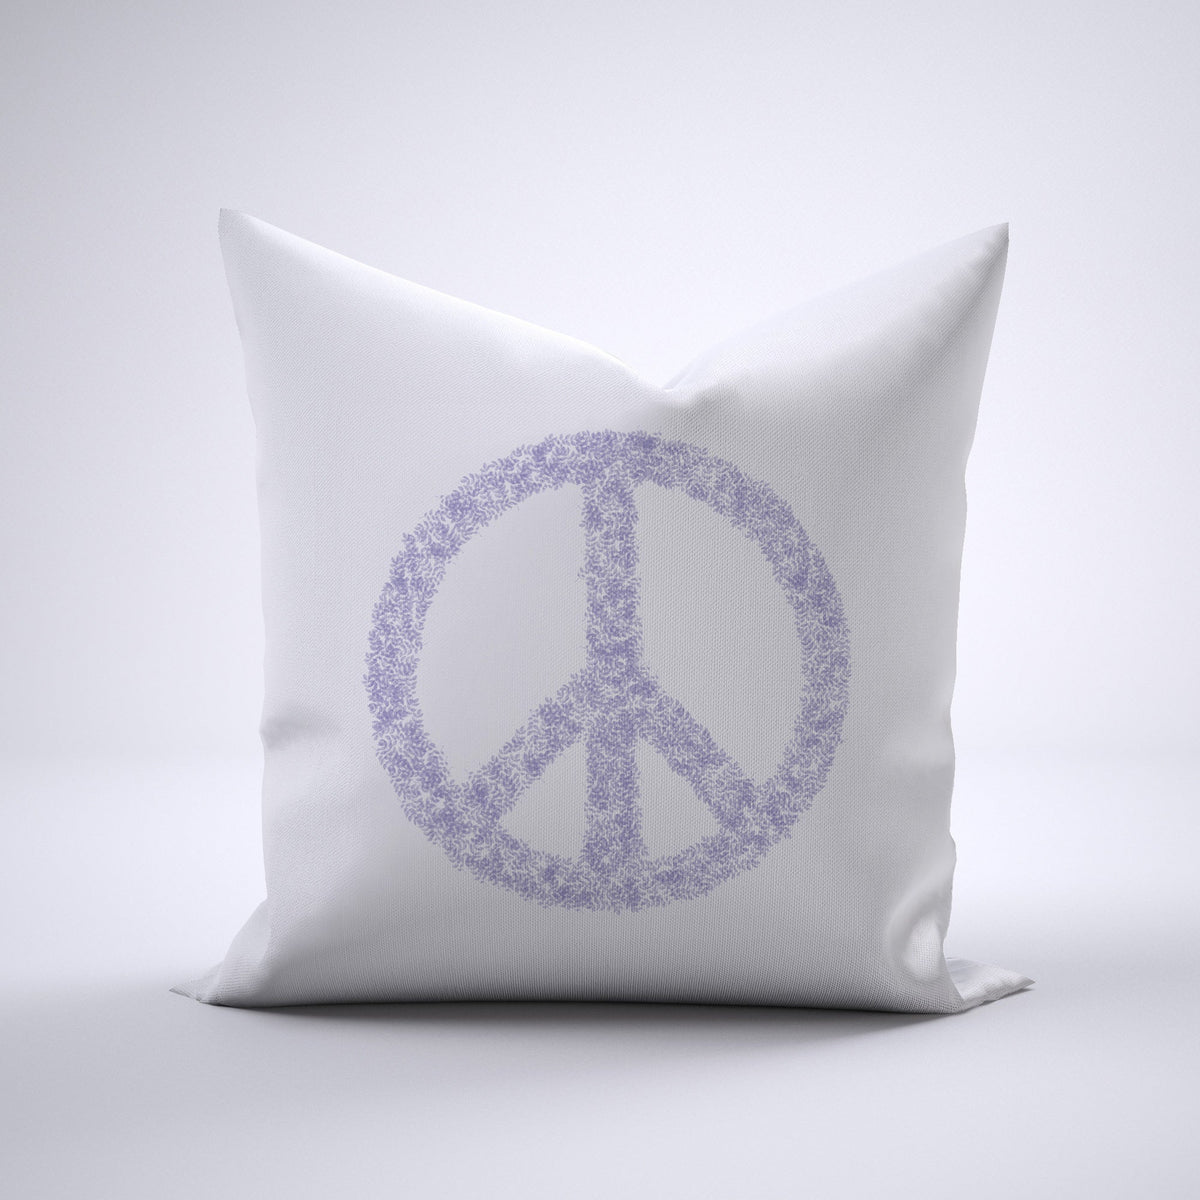 Throw Pillow - Peace Foliage Lavender Bedding, Pillows, Throw Pillows MWW 